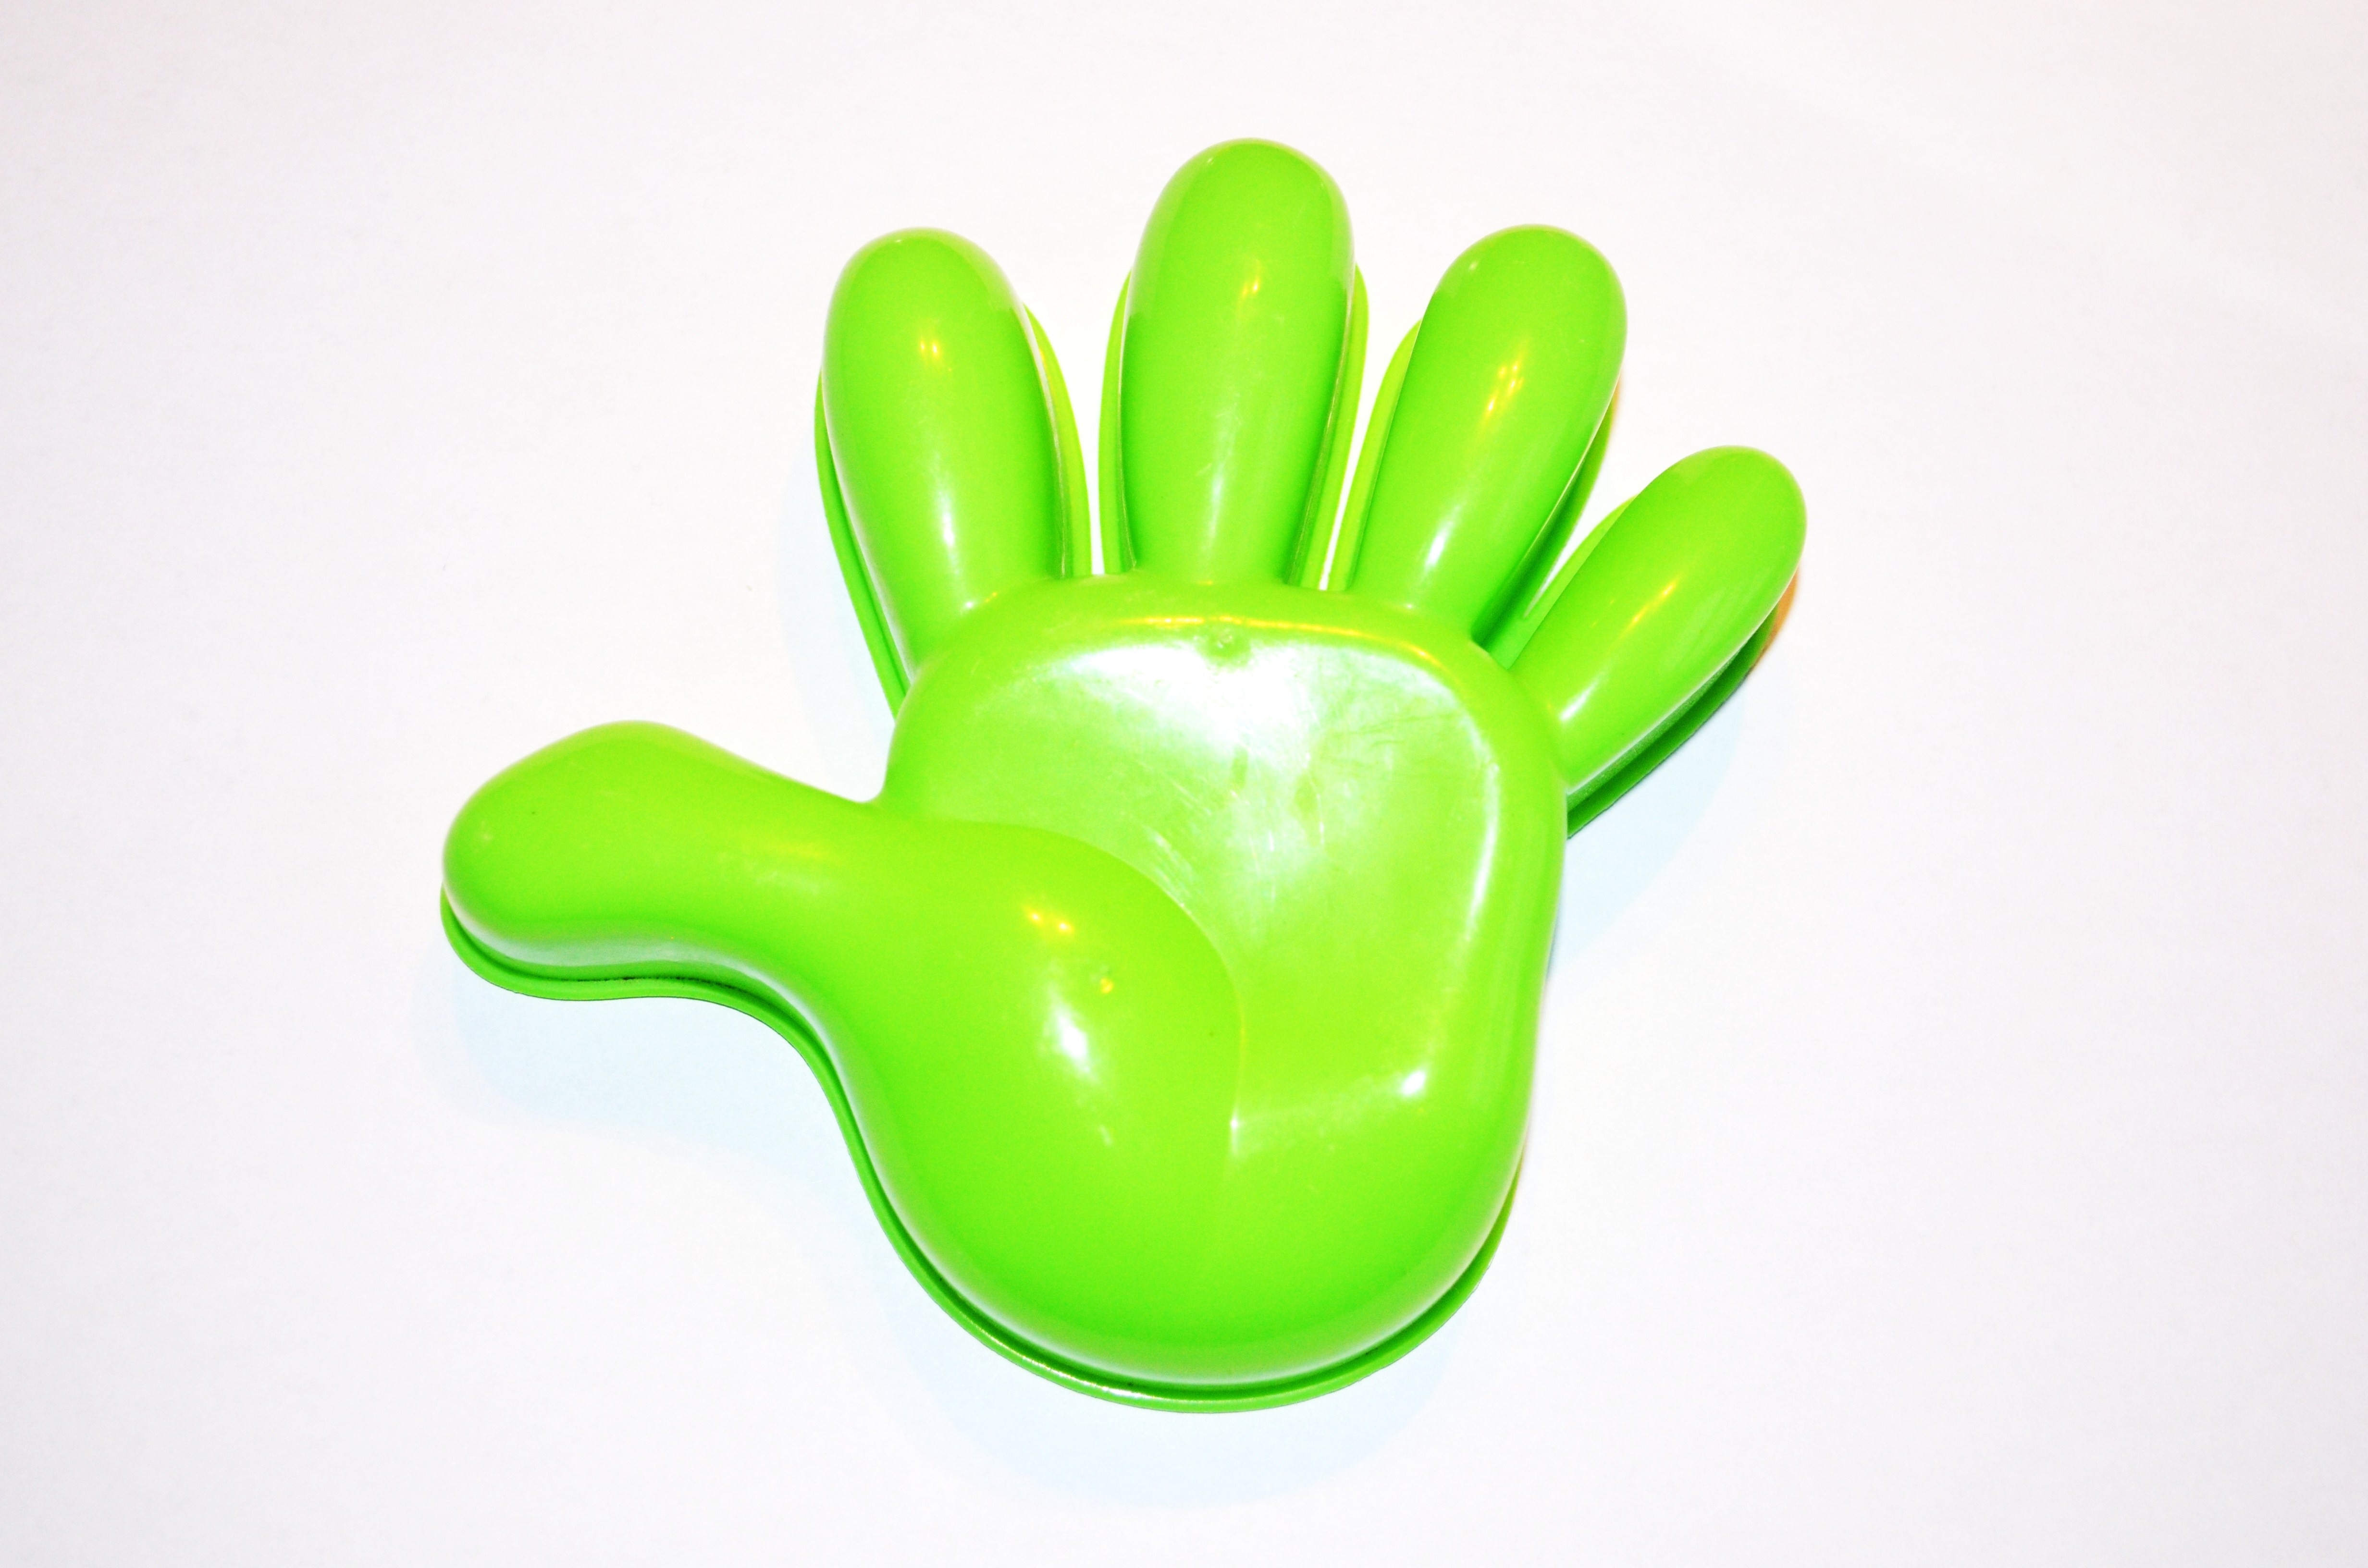 Правая рука зеленая. Зеленые ладошки. Ладошка зеленого цвета. Пластиковые пальцы. Ладошка детская пластиковая.